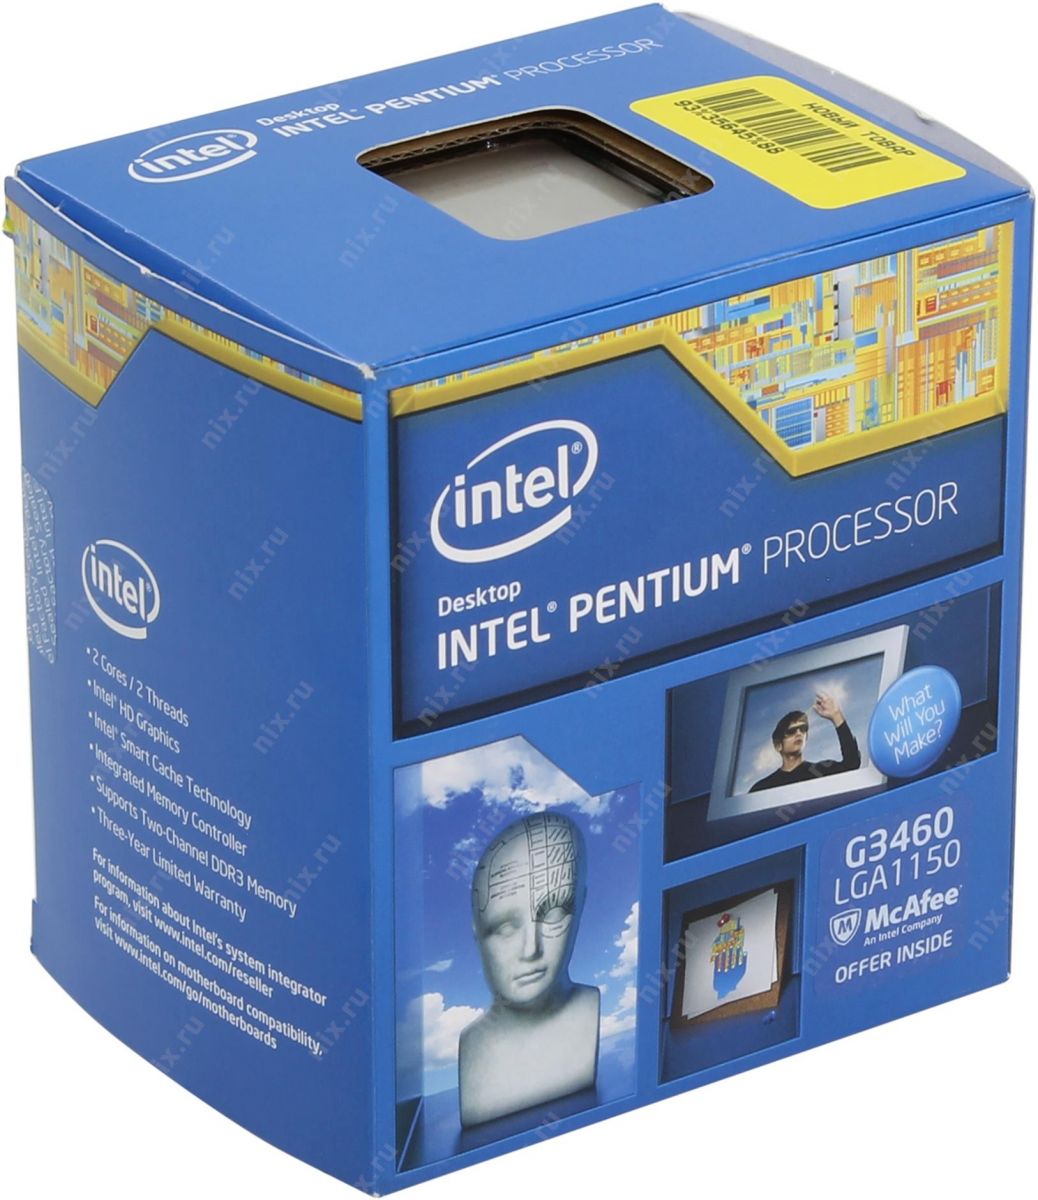 Báo giá bộ cây máy tính để bàn Intel Pentium G3460